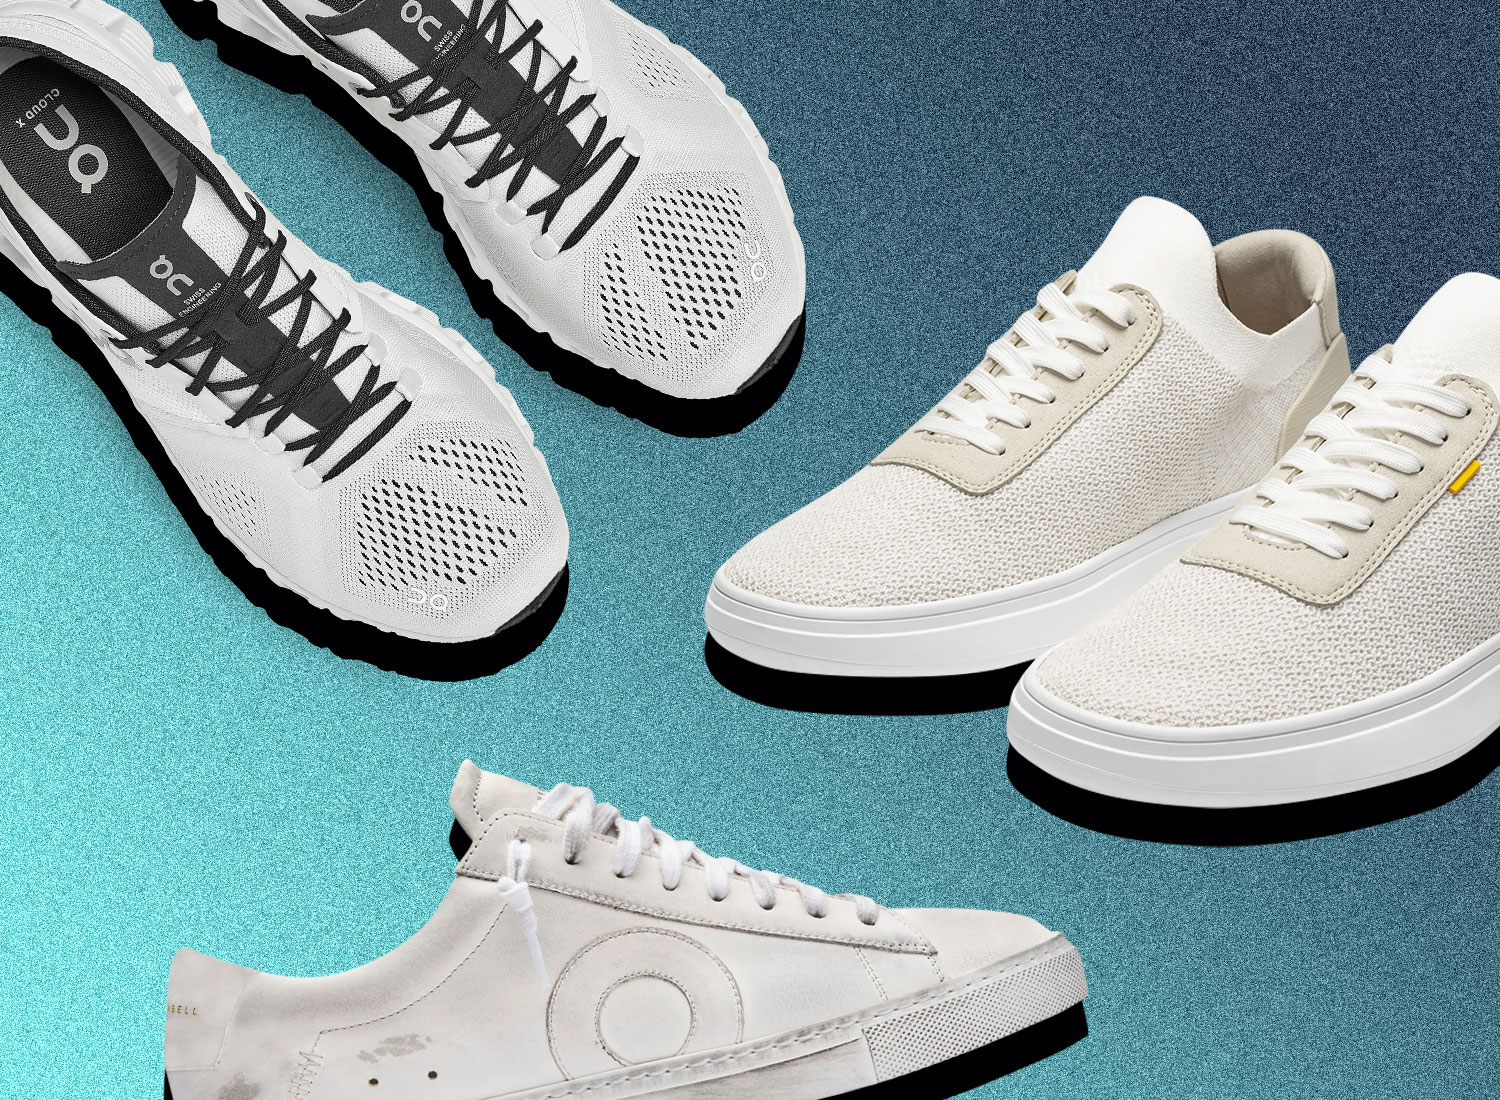 25 Best White Sneakers For Men